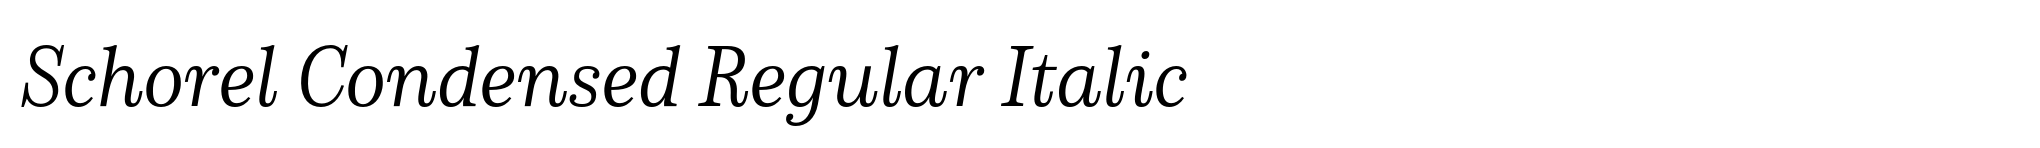 Schorel Condensed Regular Italic image